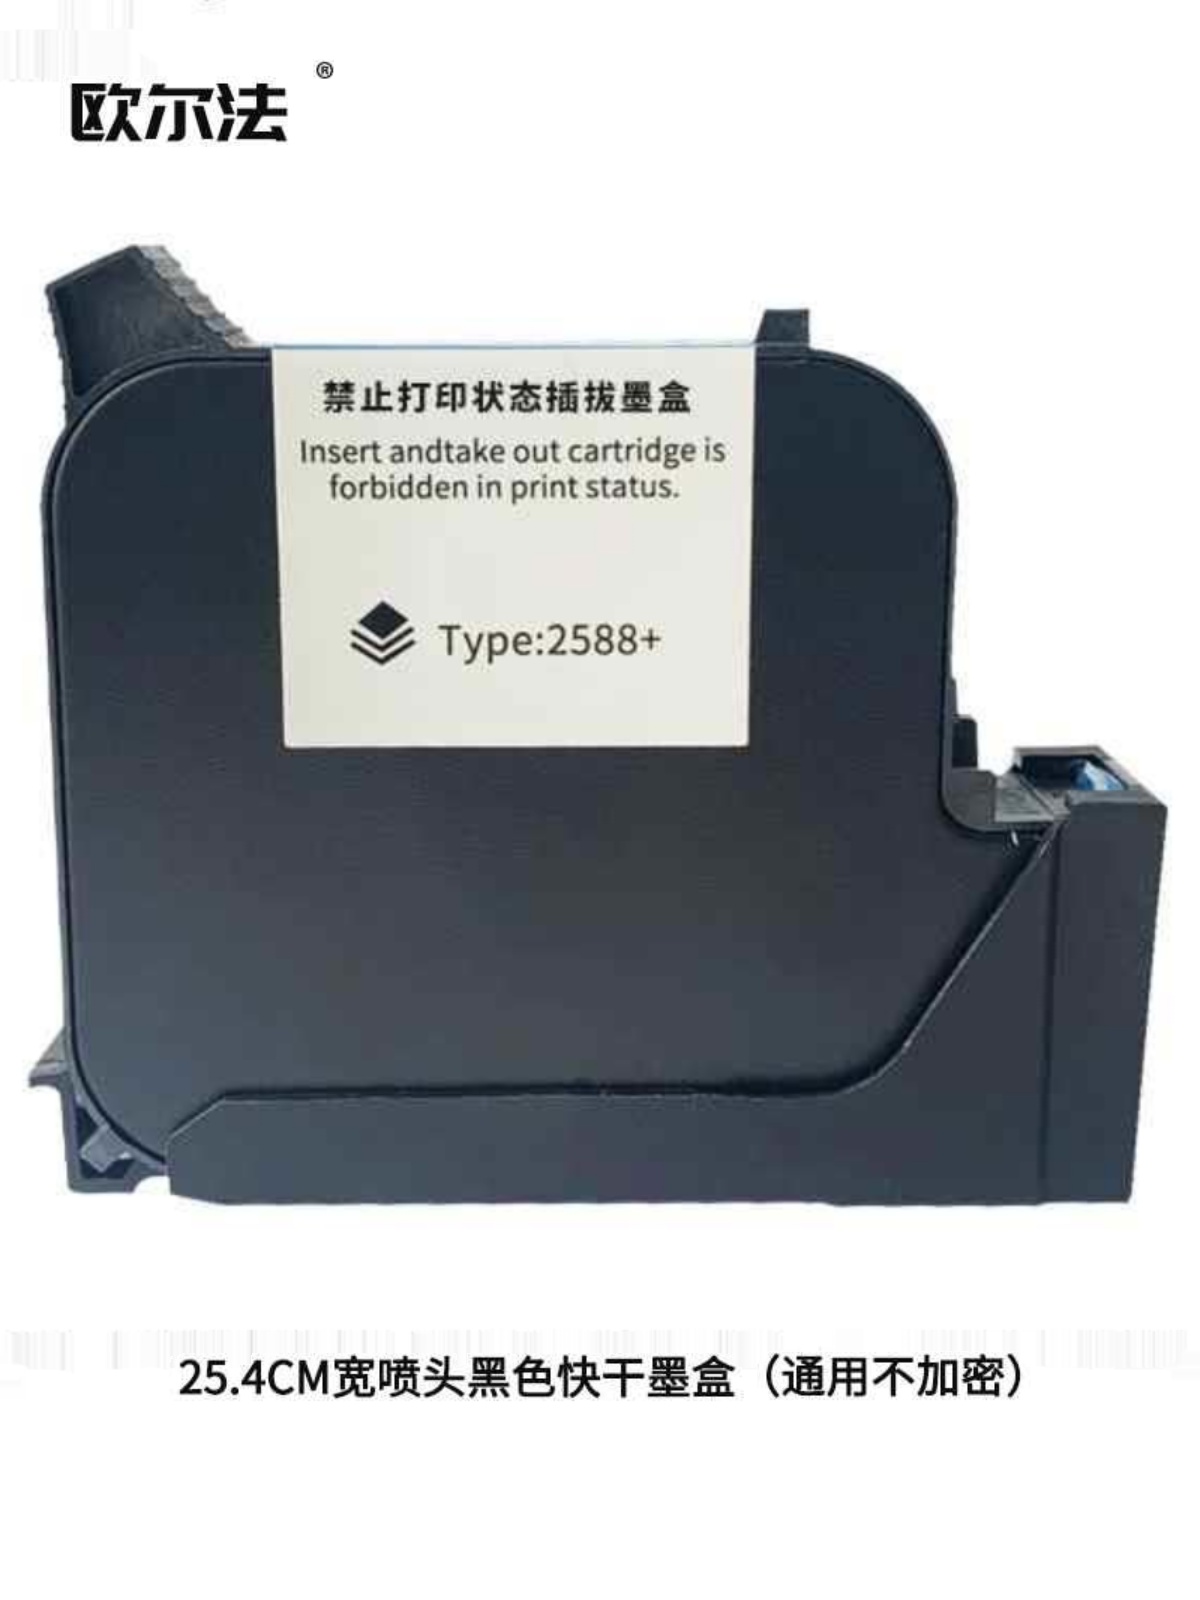 欧尔法喷码机墨盒通用型2588黑色快干墨盒原装进口打码机专用速